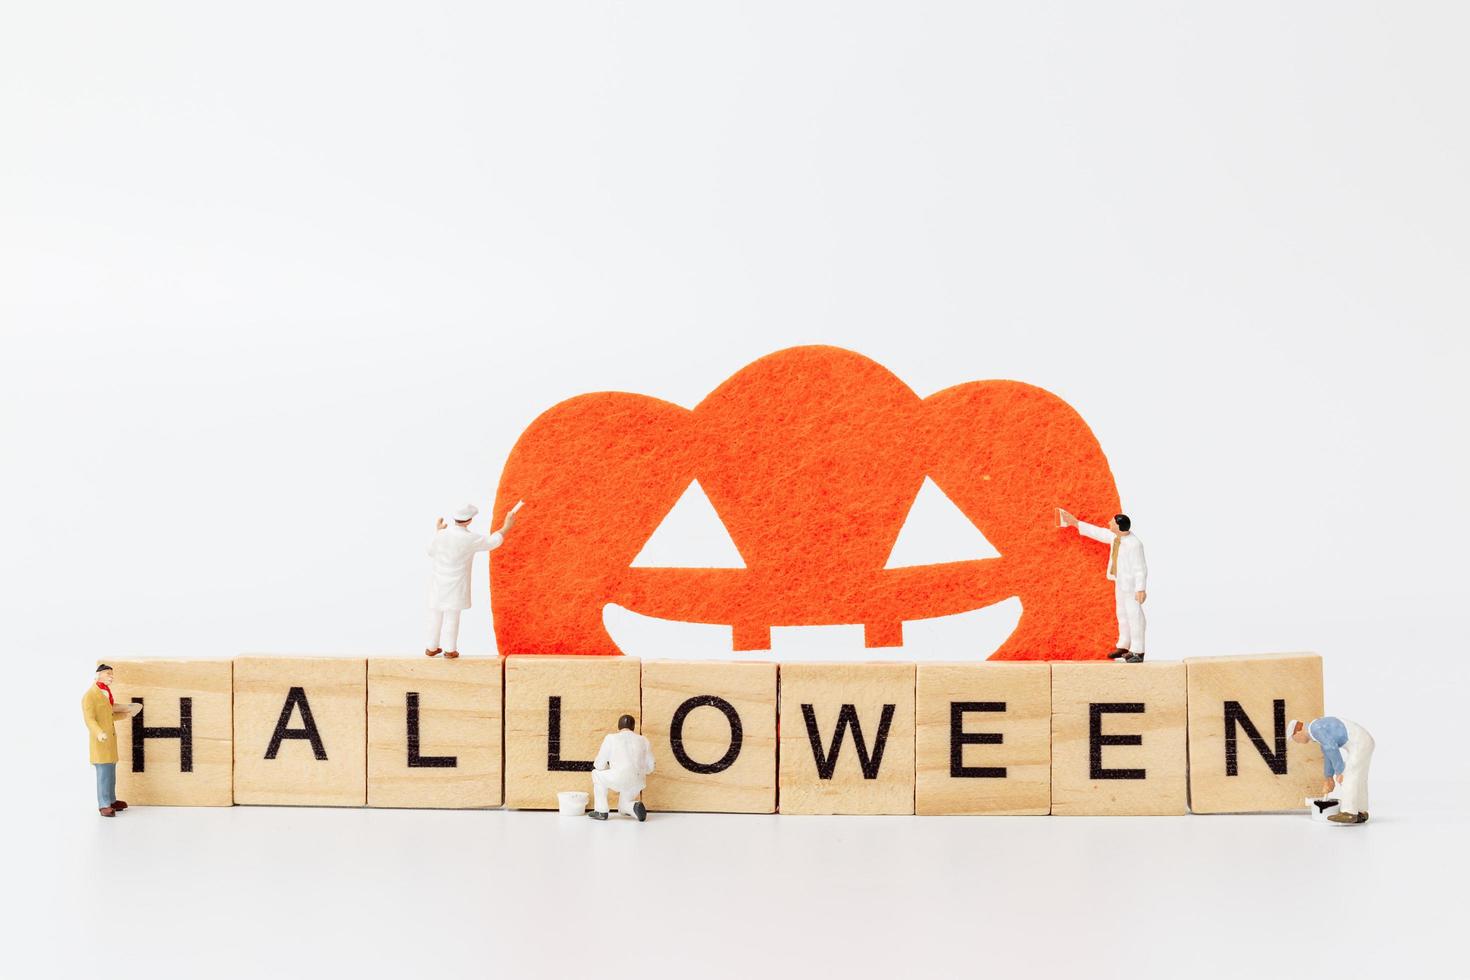 trabalhadores em miniatura se unem para criar adereços de festa de halloween com blocos de madeira com o texto halloween em um fundo branco foto